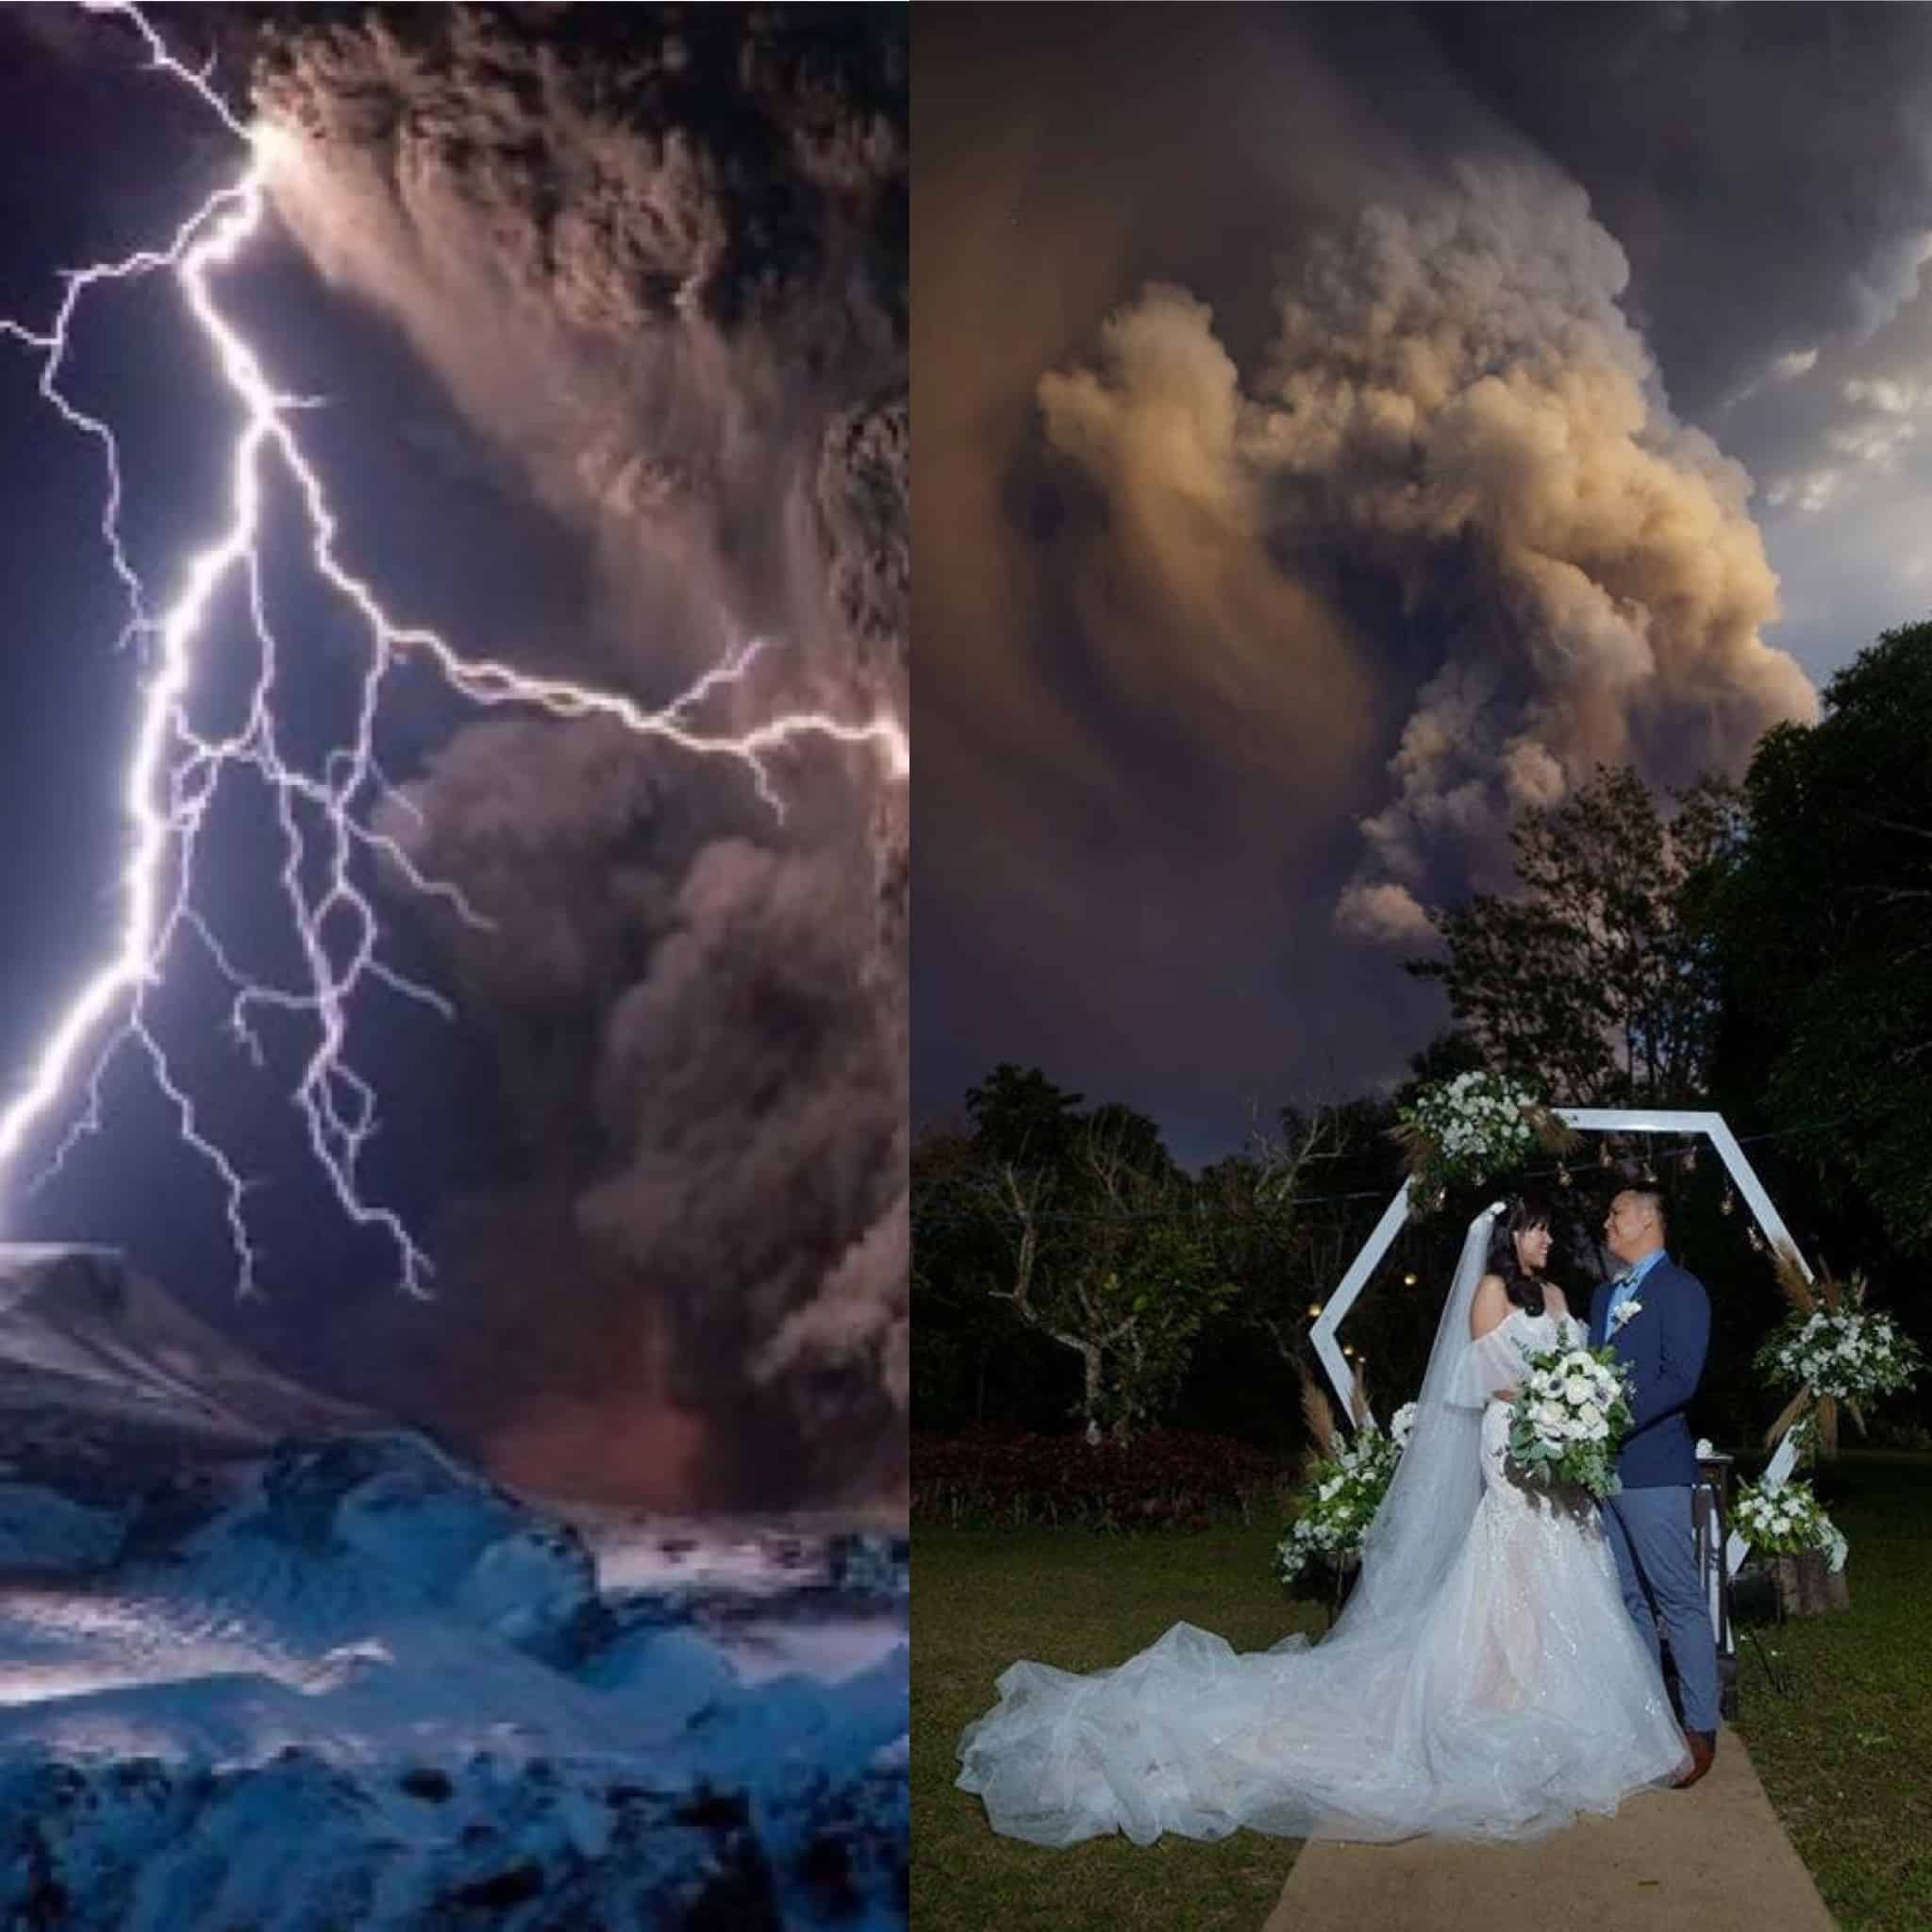 زفاف تحت البركان الثائر وصور مخيفة